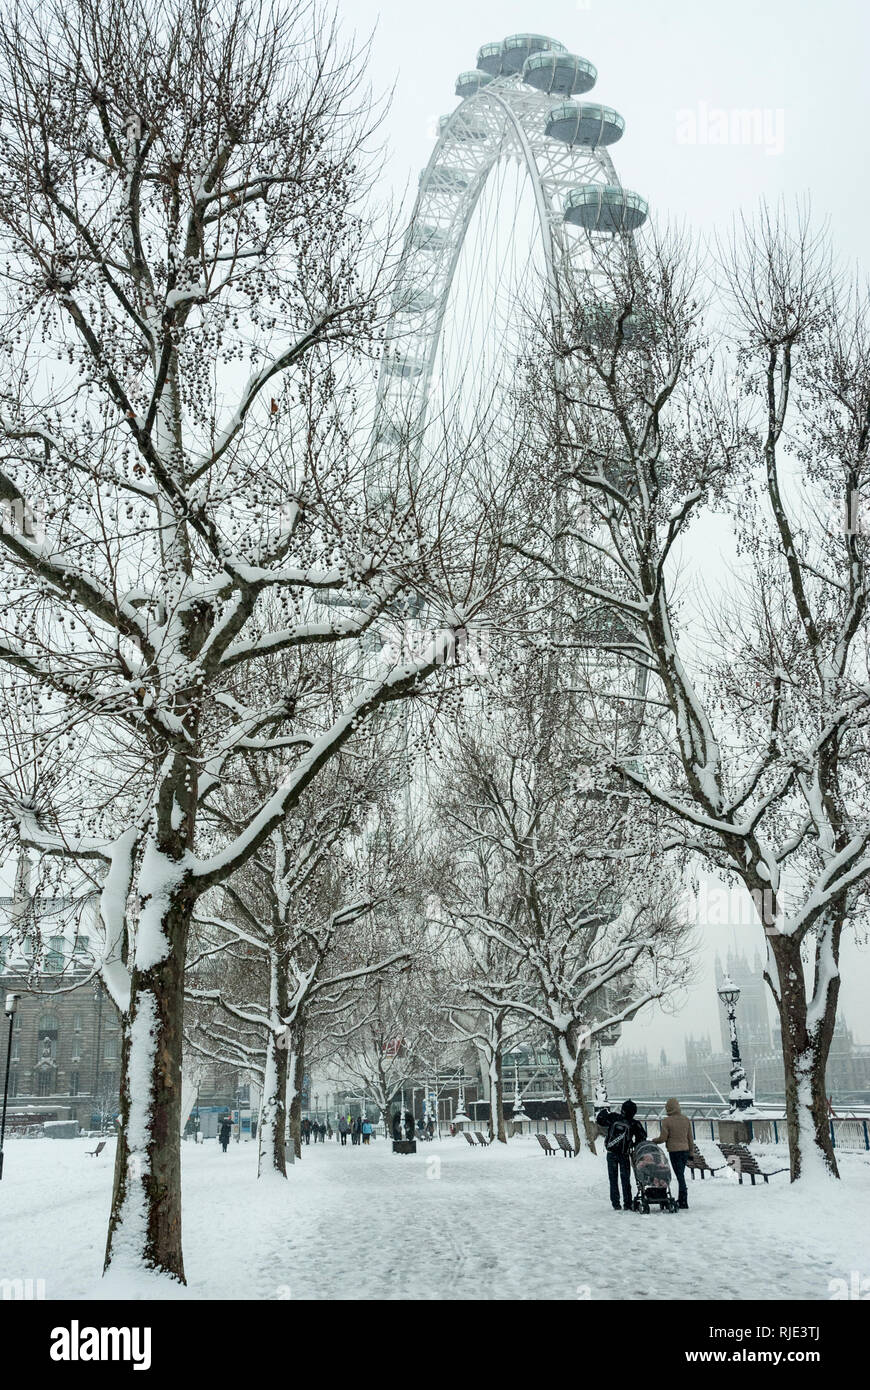 Malerischer Blick auf das London Eye Riesenrad und die umliegenden Bäume im Schnee bedeckt. Stockfoto